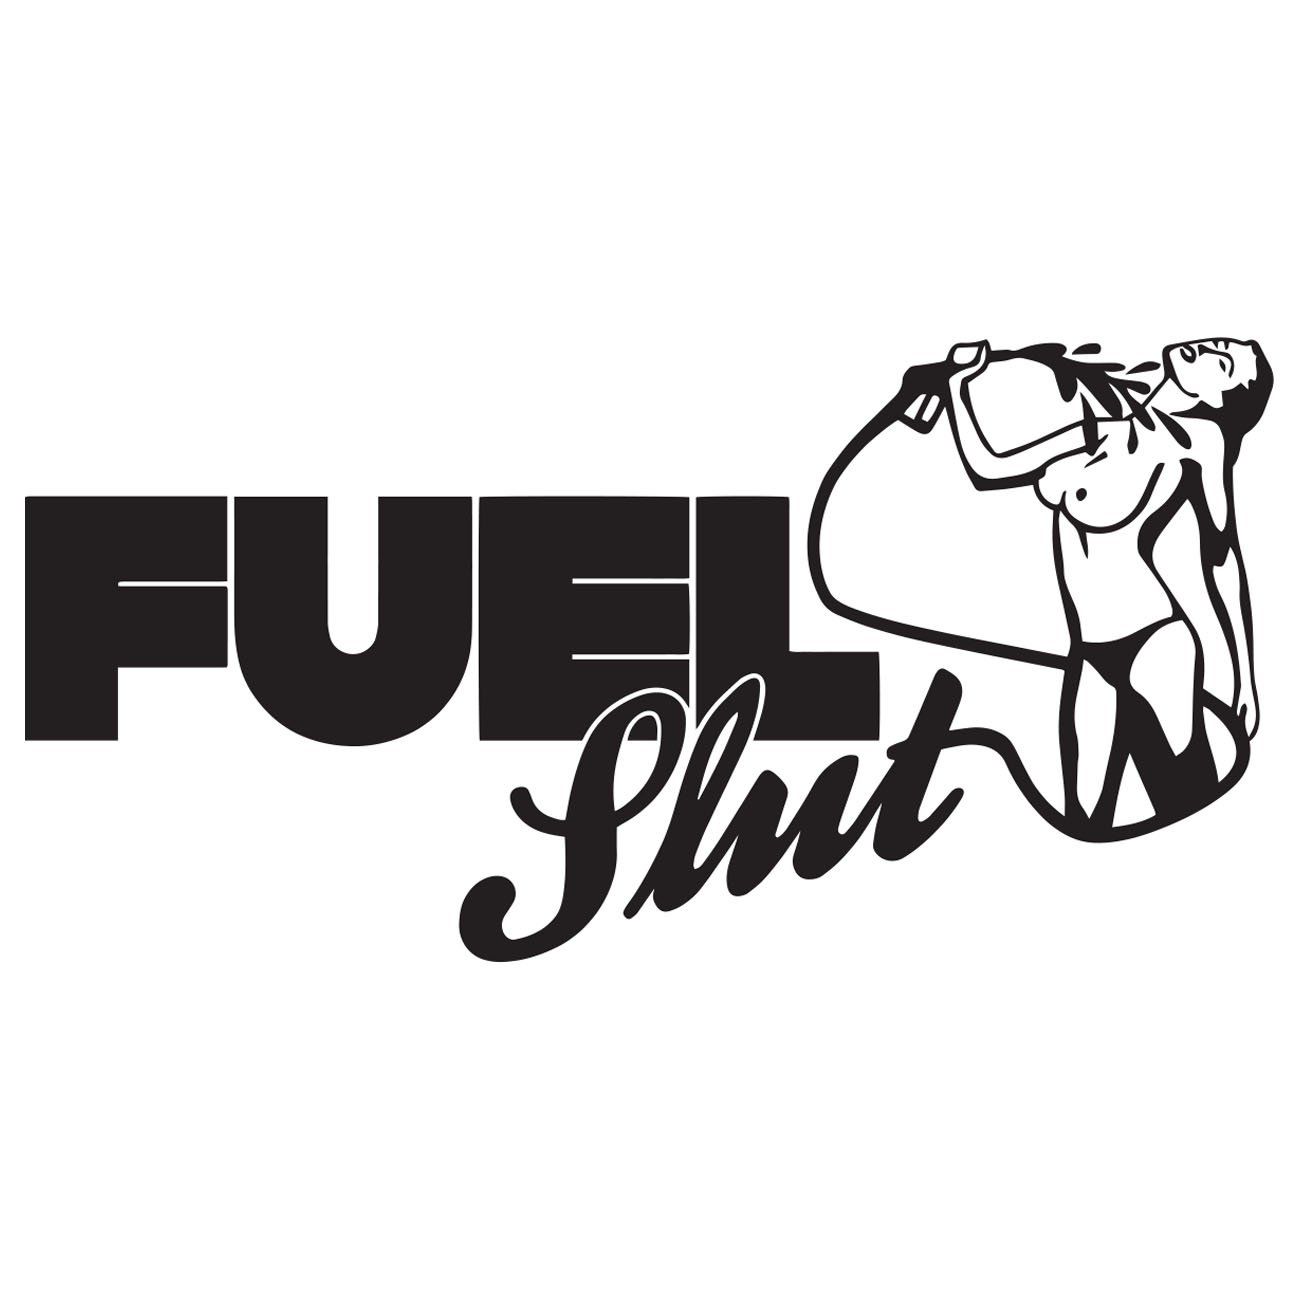 Fuel slut com